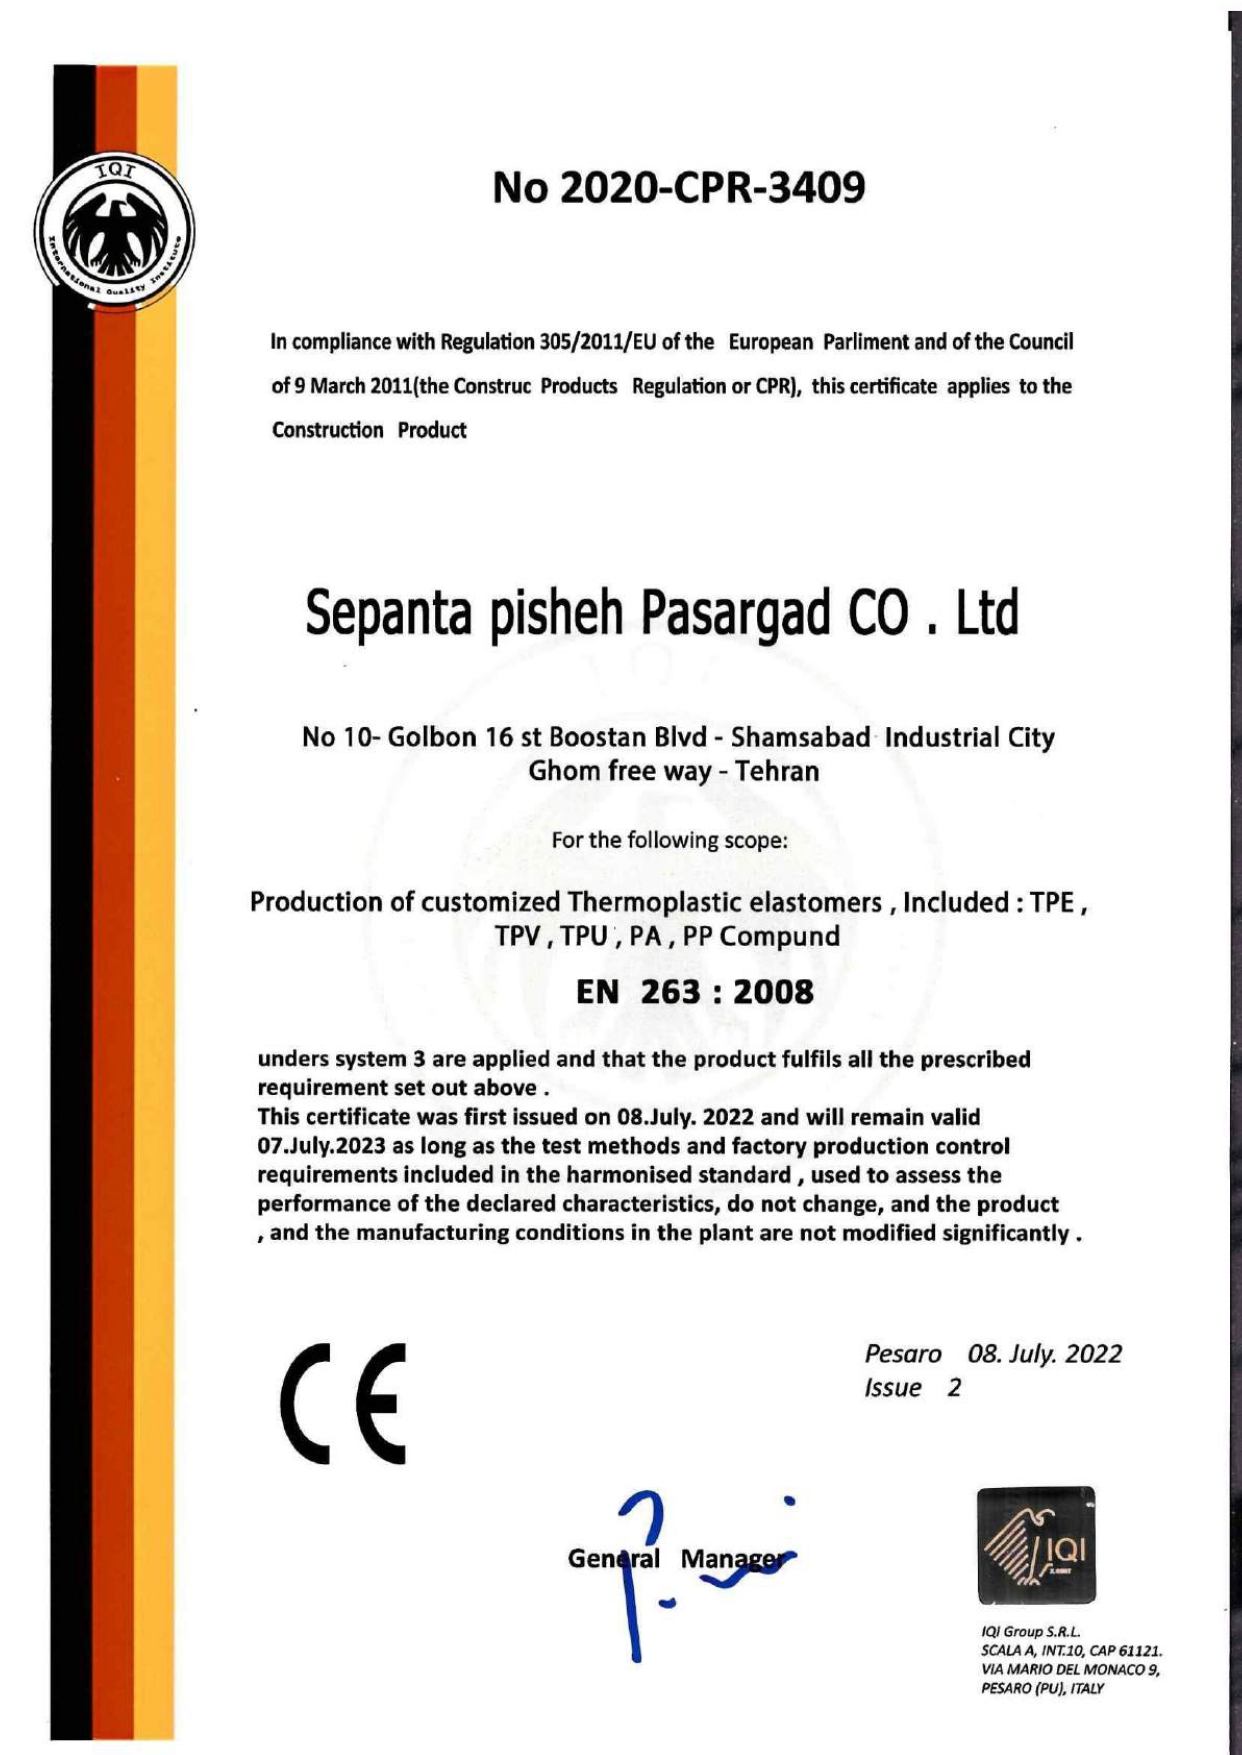 sepanta pisheh pasargad Co . ltd certificate